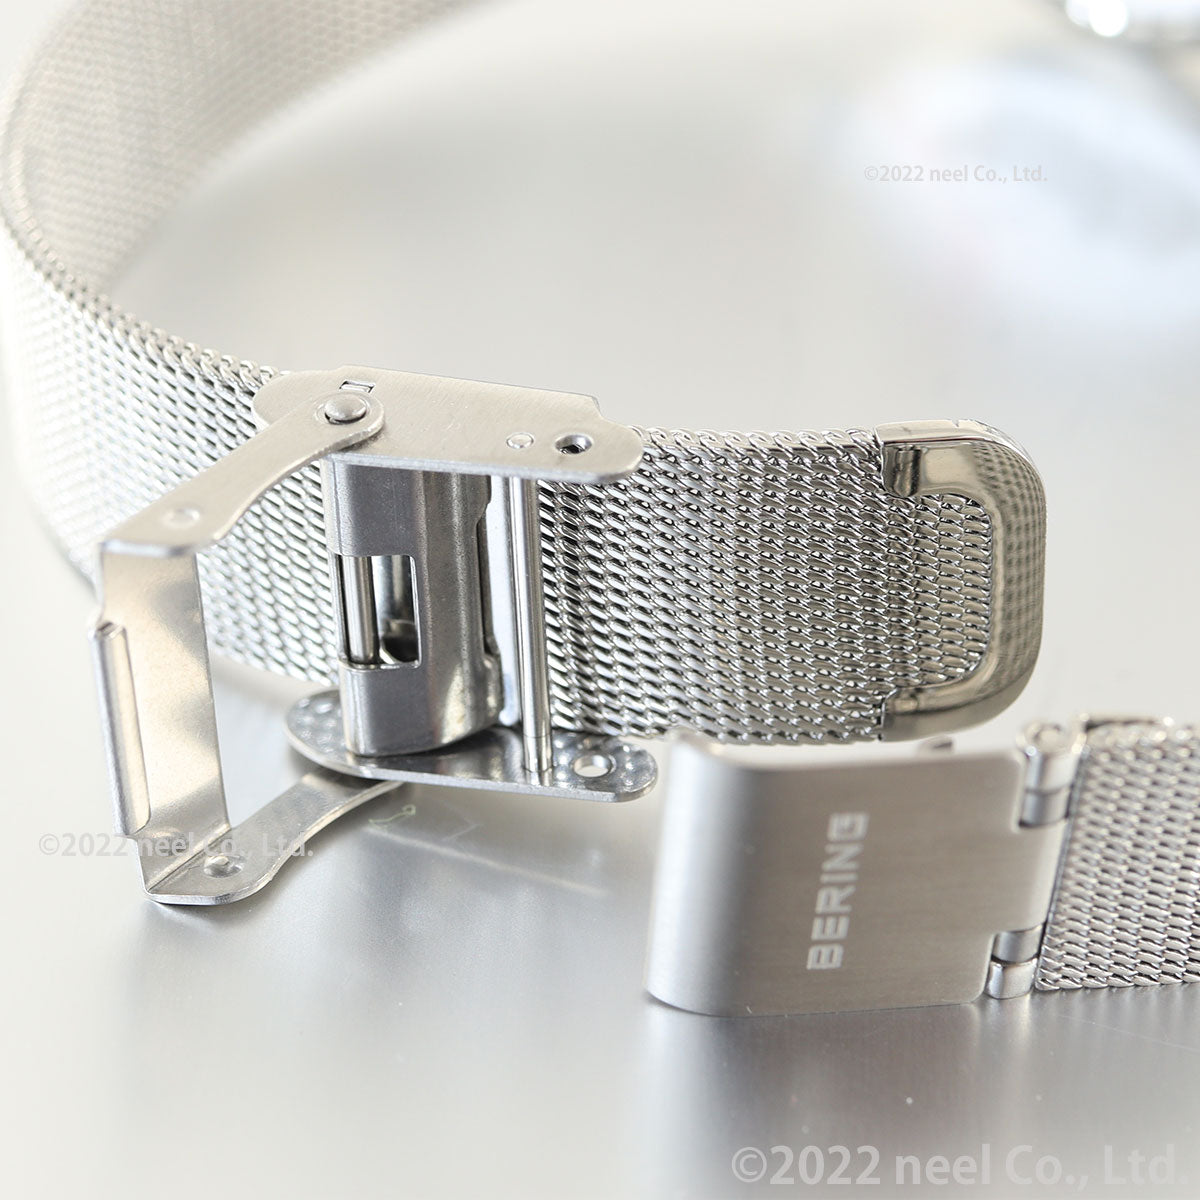 ベーリング BERING 腕時計 レディース チェンジズミニ Changes mini 15729-604-3H